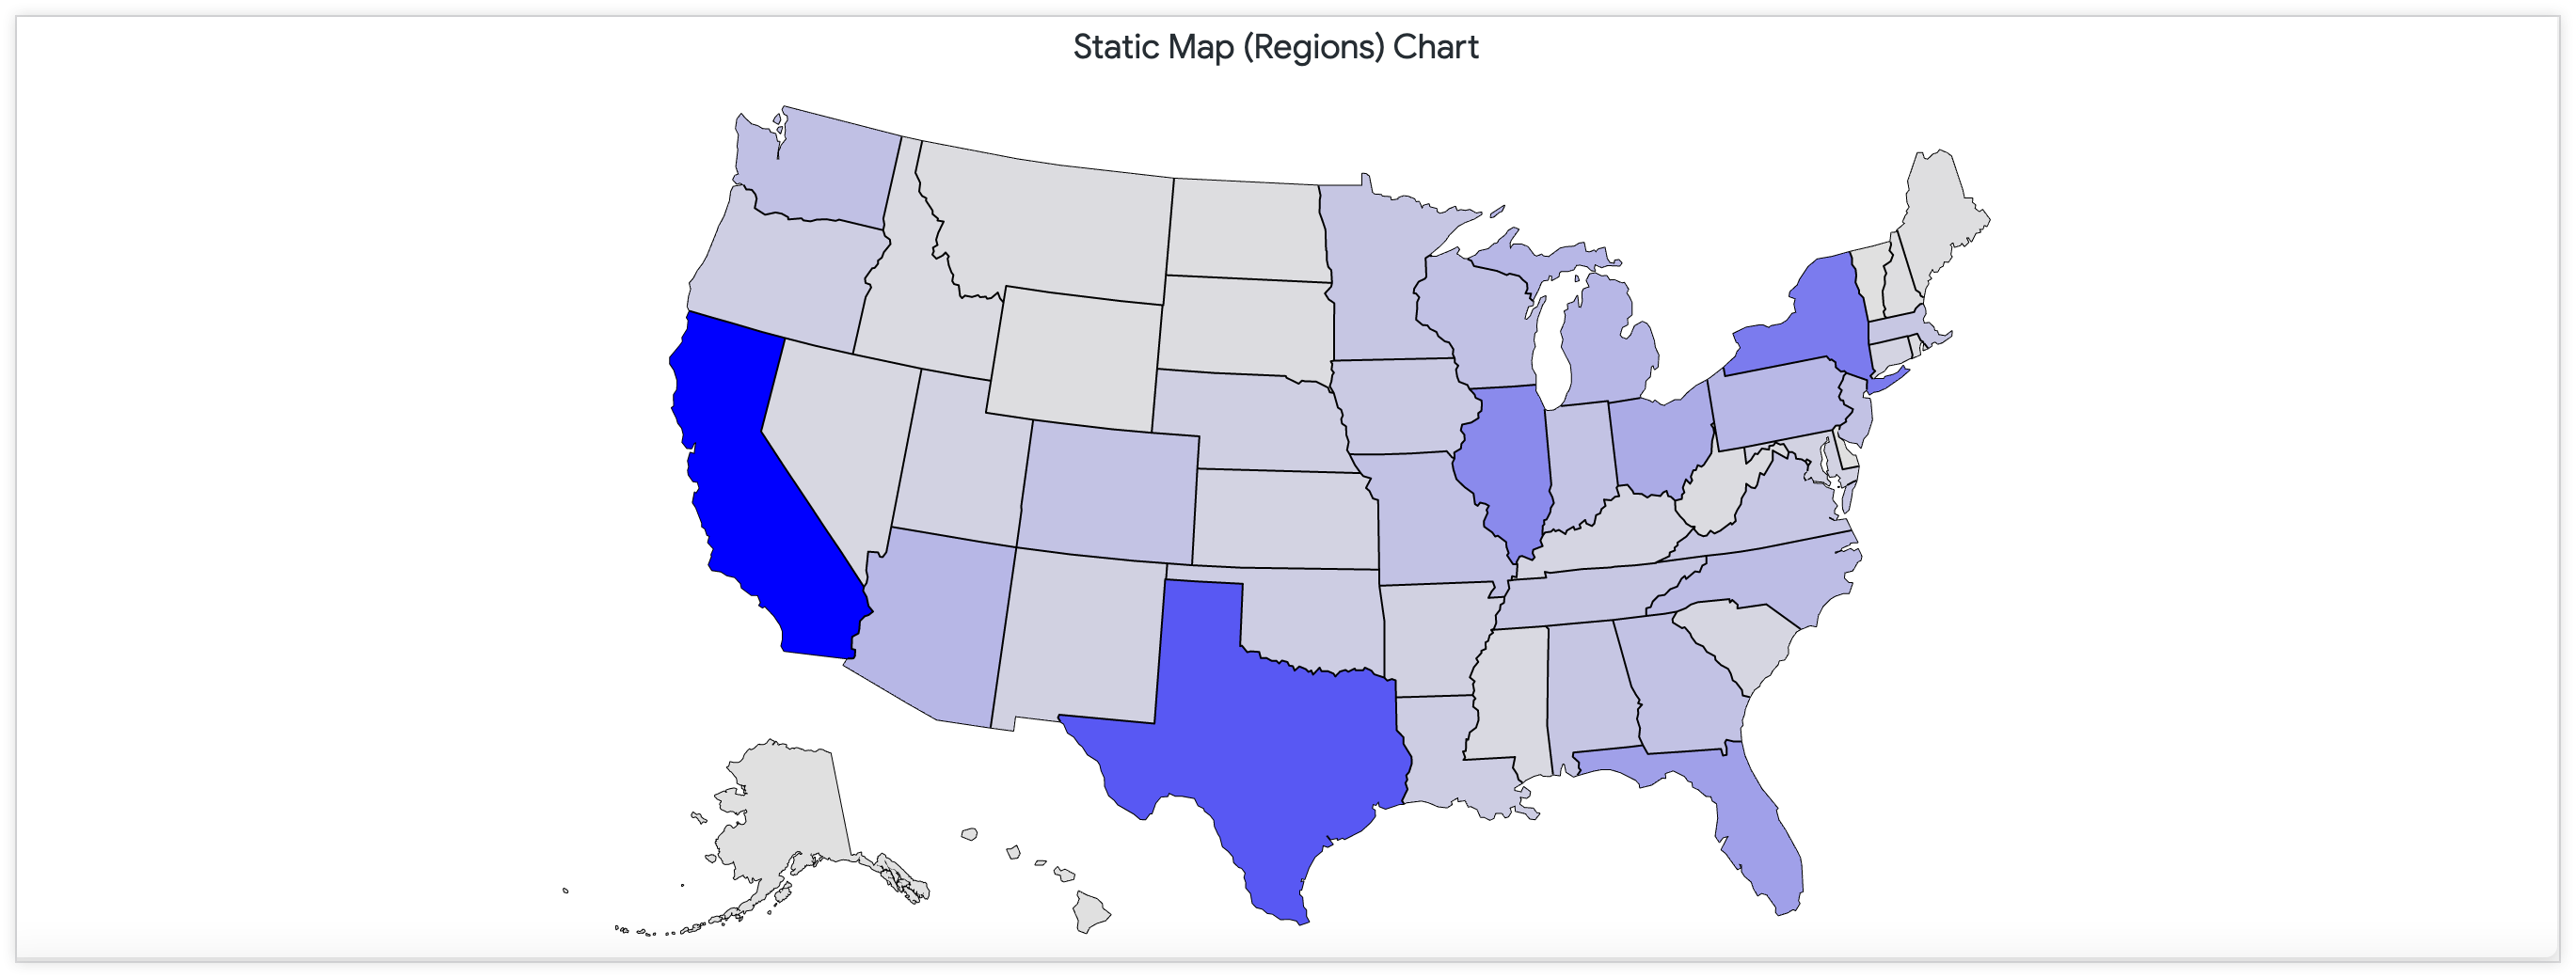 연속적인 색상 팔레트를 통해 미국 내 매장 위치 수를 보여주는 정적 지도